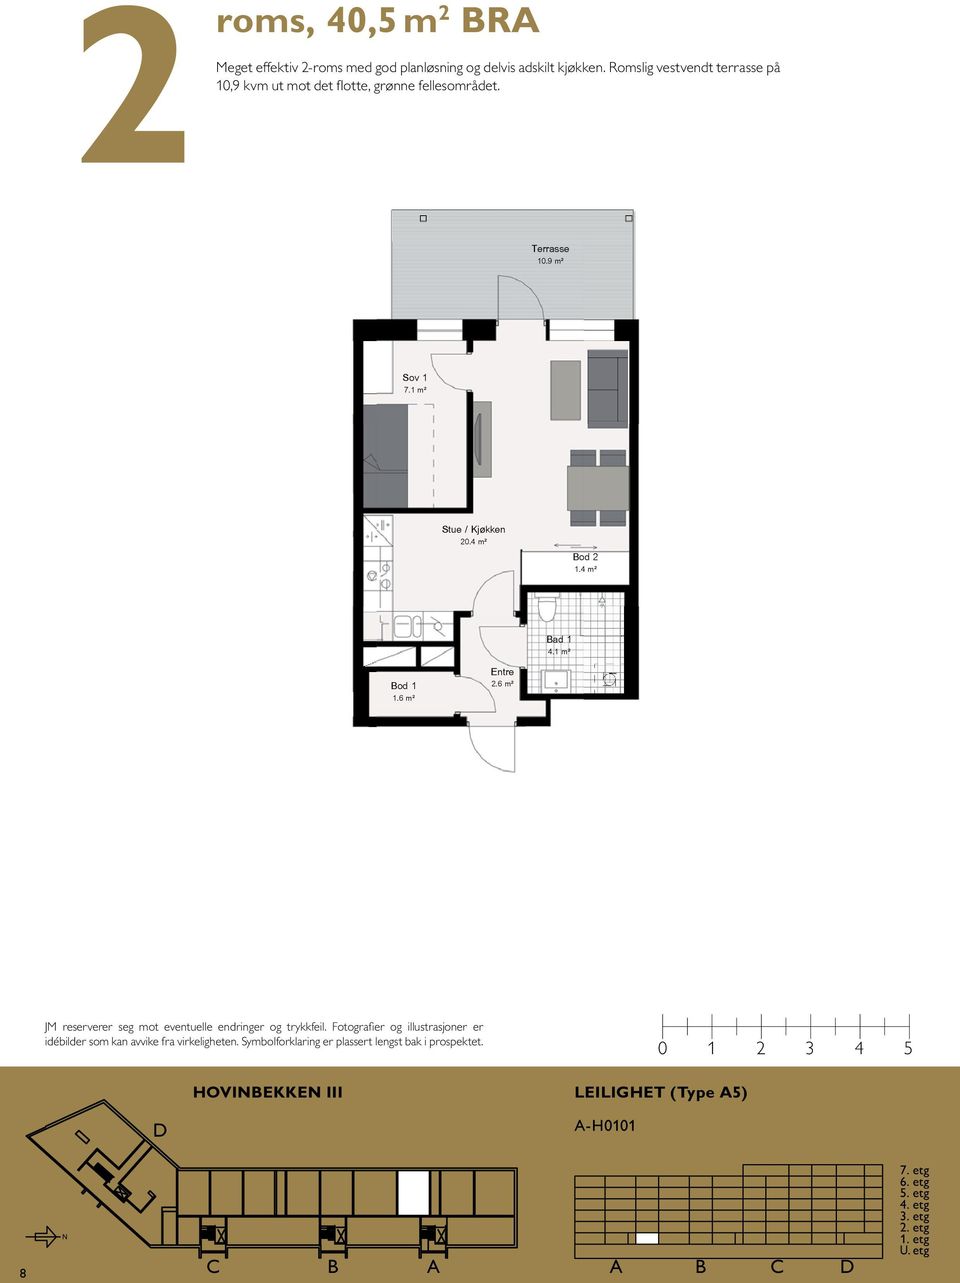 Romslig vestvendt terrasse på 1 A 1 4,5m2 37,5m2 HOVIBEKKE III Leilighet type Terrasse 1.9 m² 7.1 m² 2.4 m² Bod 2 1.4 m² 2.6 m² 1.6 m² 4.1 m² 8.